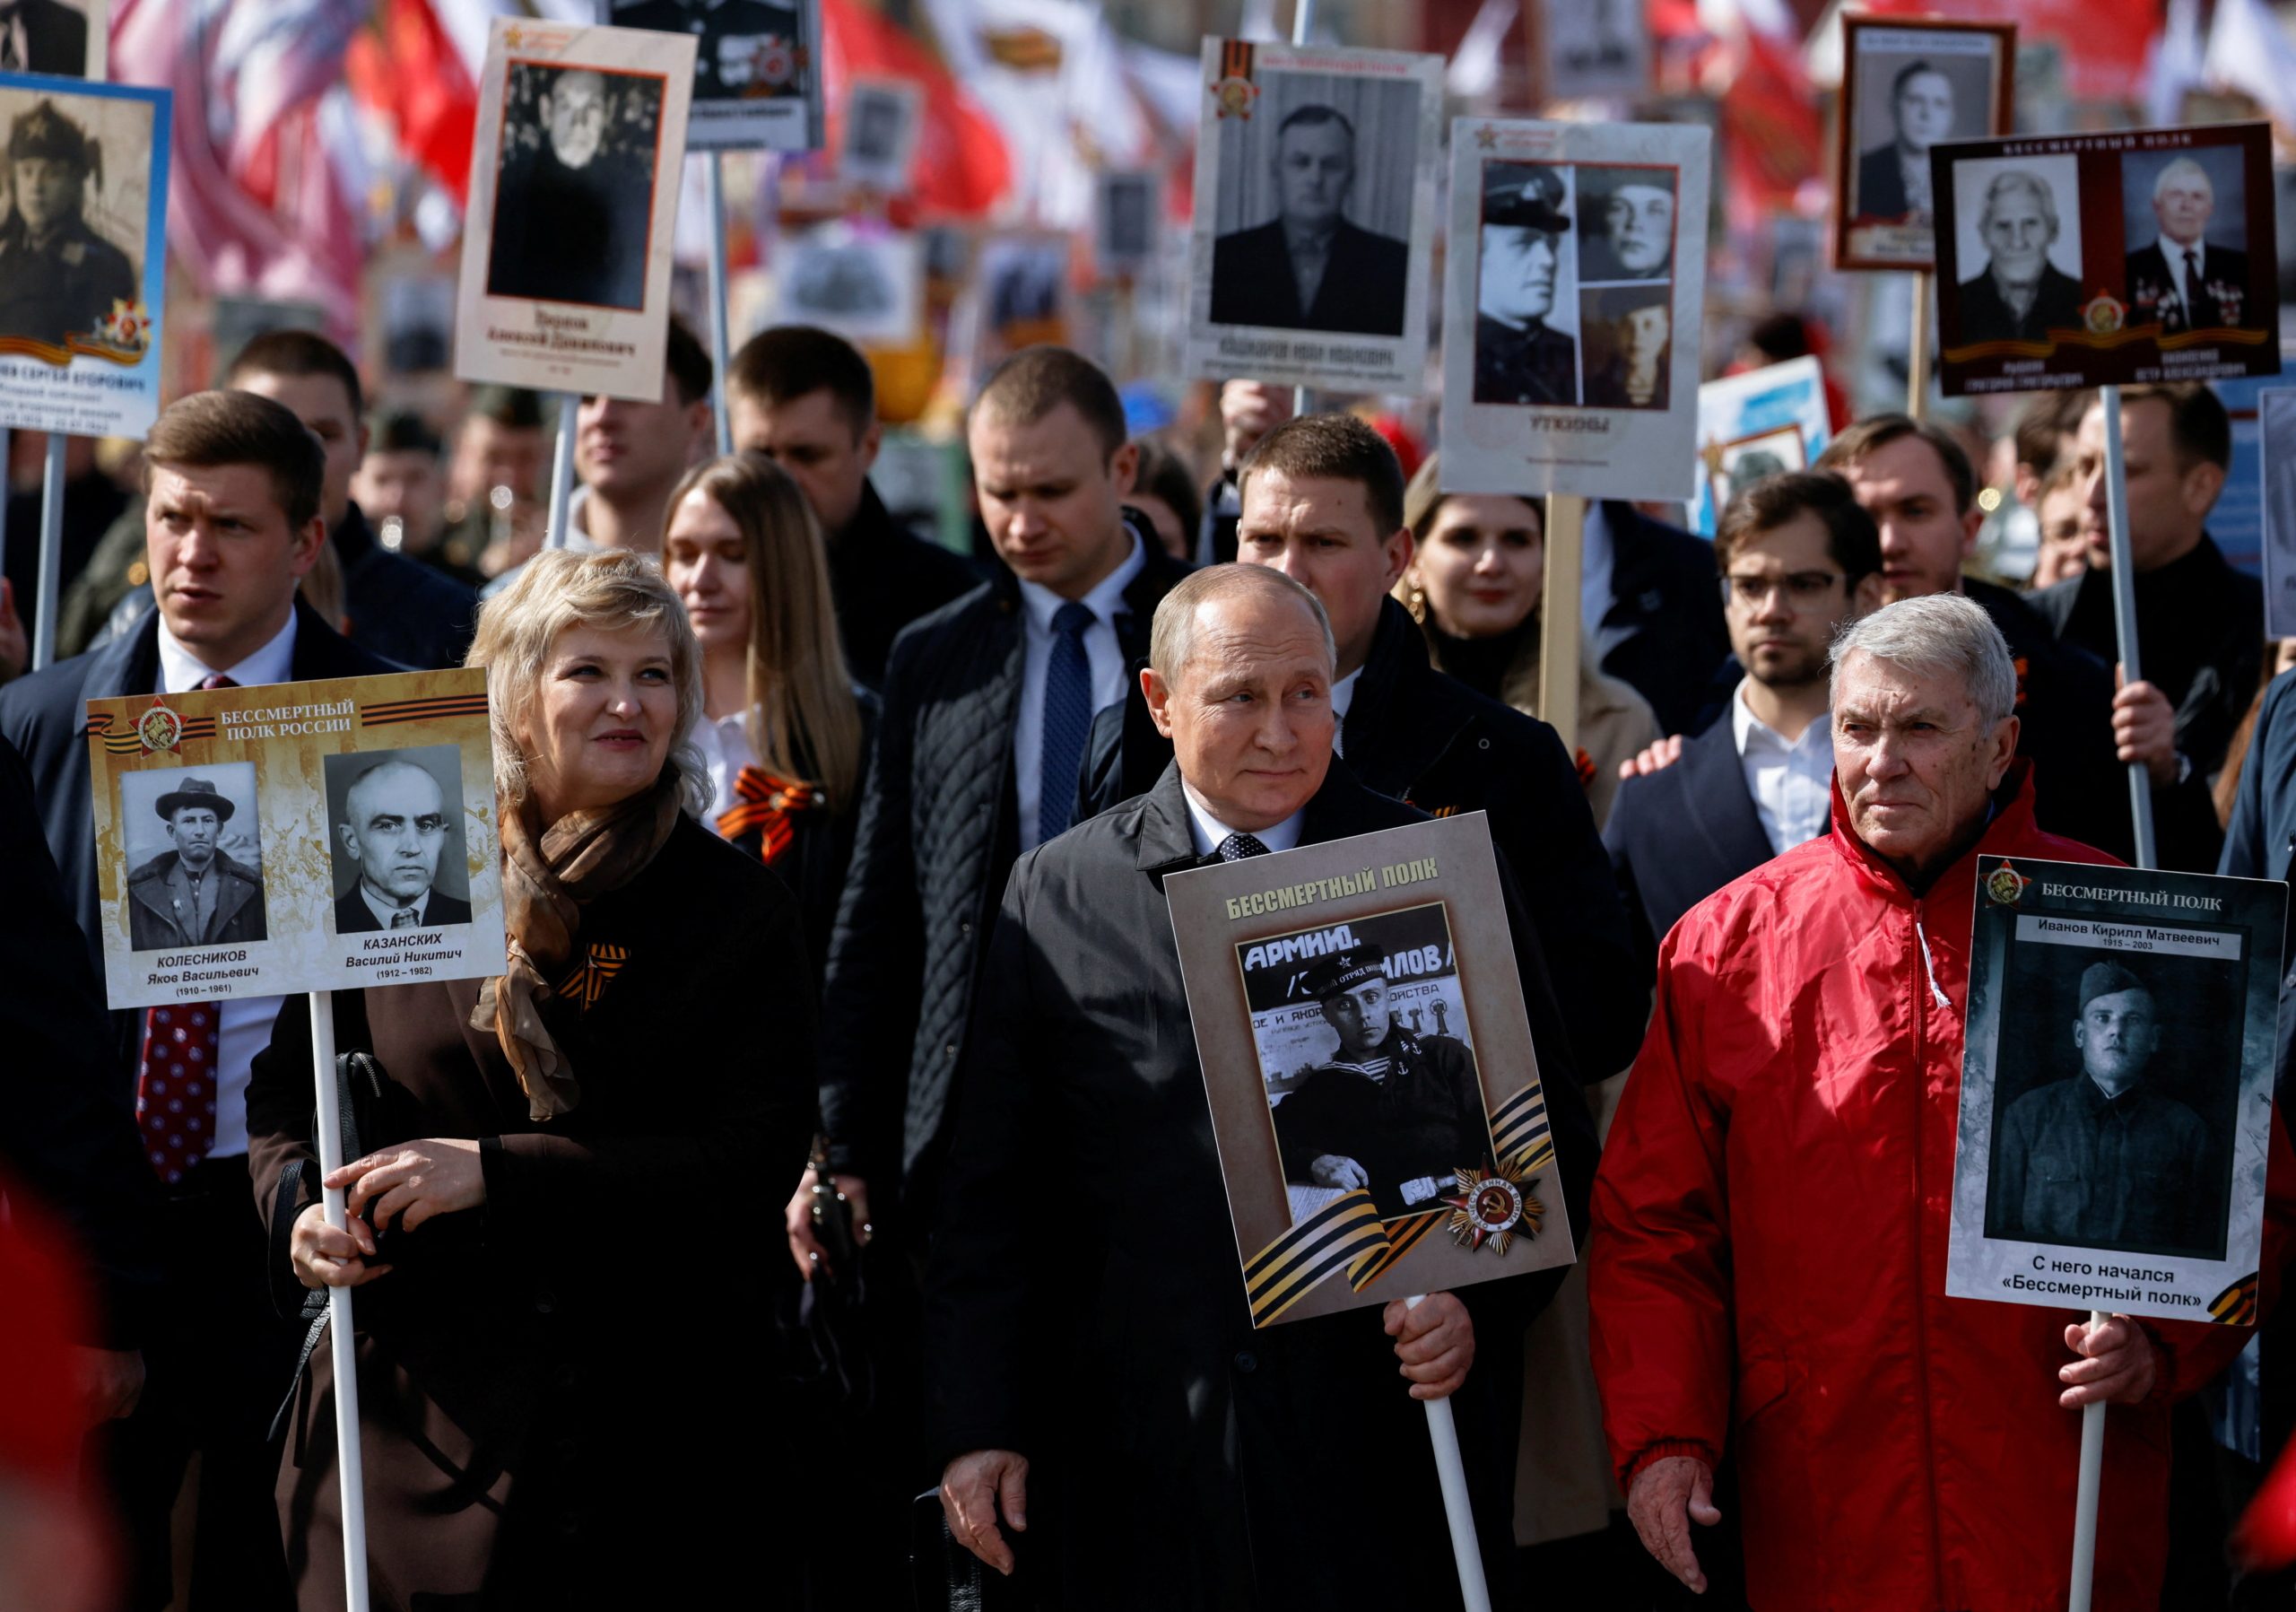 حمل صورة والده الذي أصيب في الحرب العالمية الثانية! بوتين يشارك في مسيرة وطنية بعيد النصر